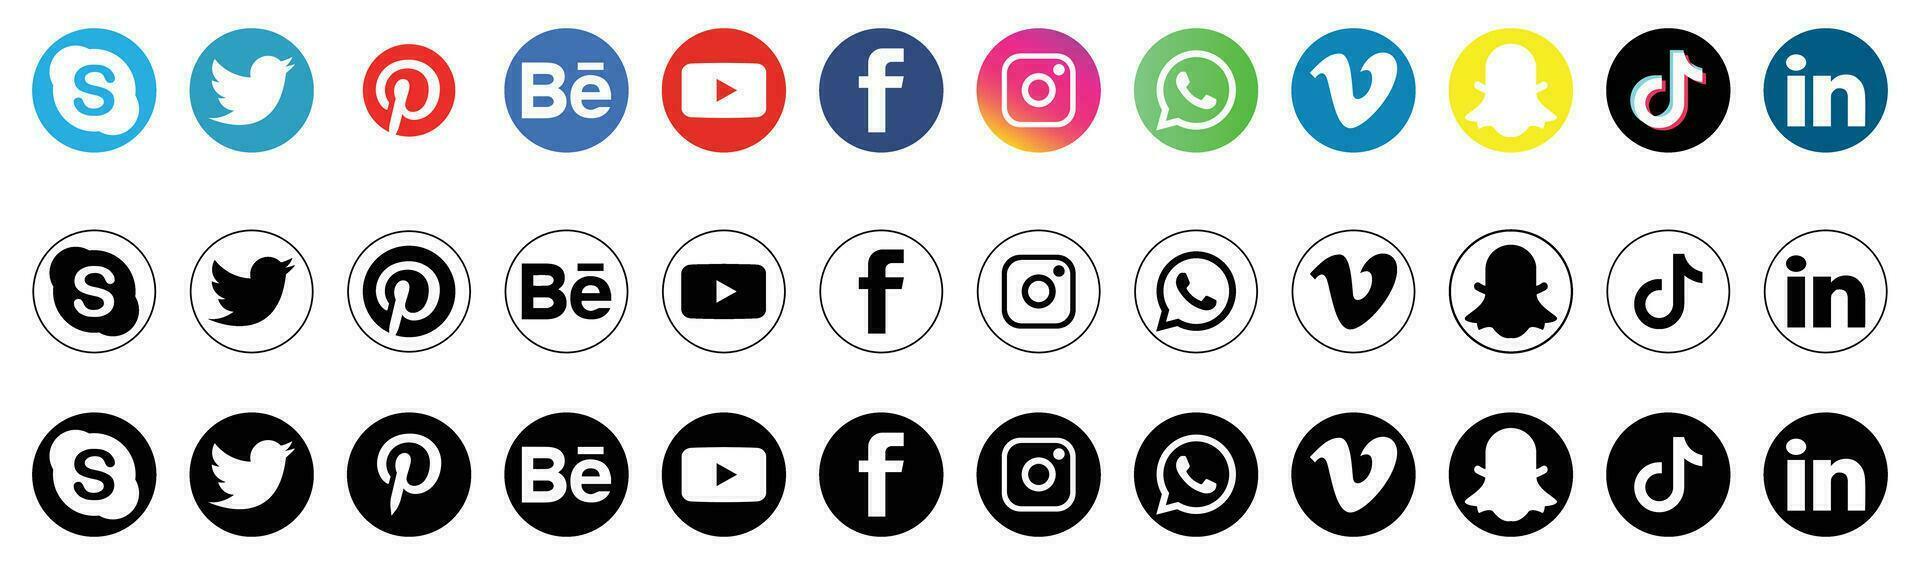 social meios de comunicação logotipo ícones isolado em branco vetor